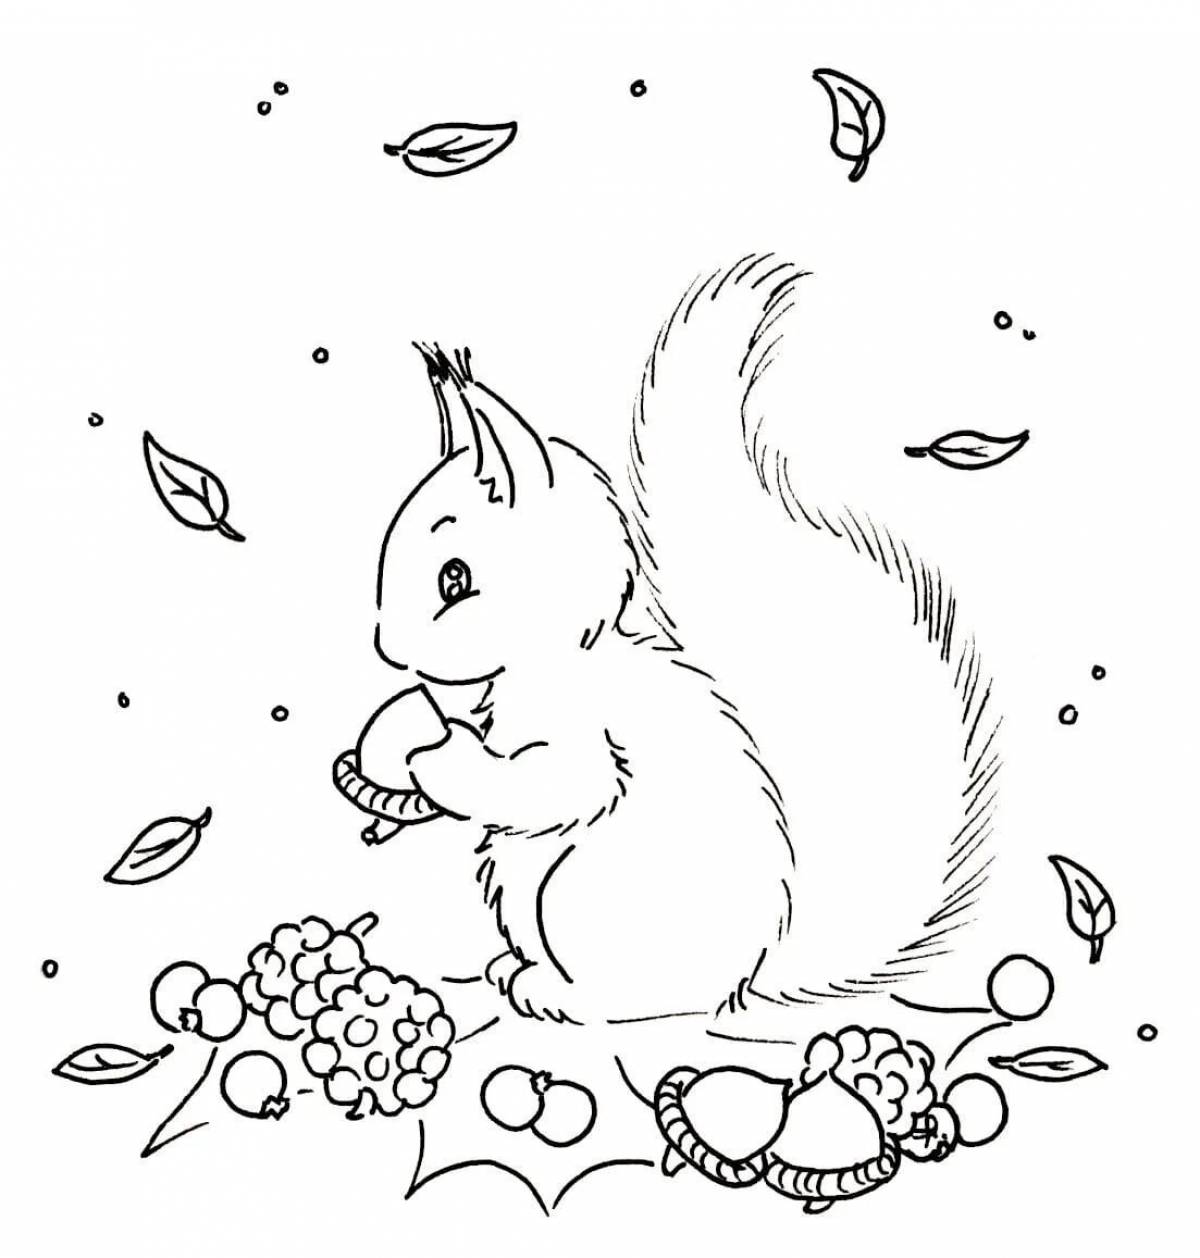 Funny squirrel coloring book